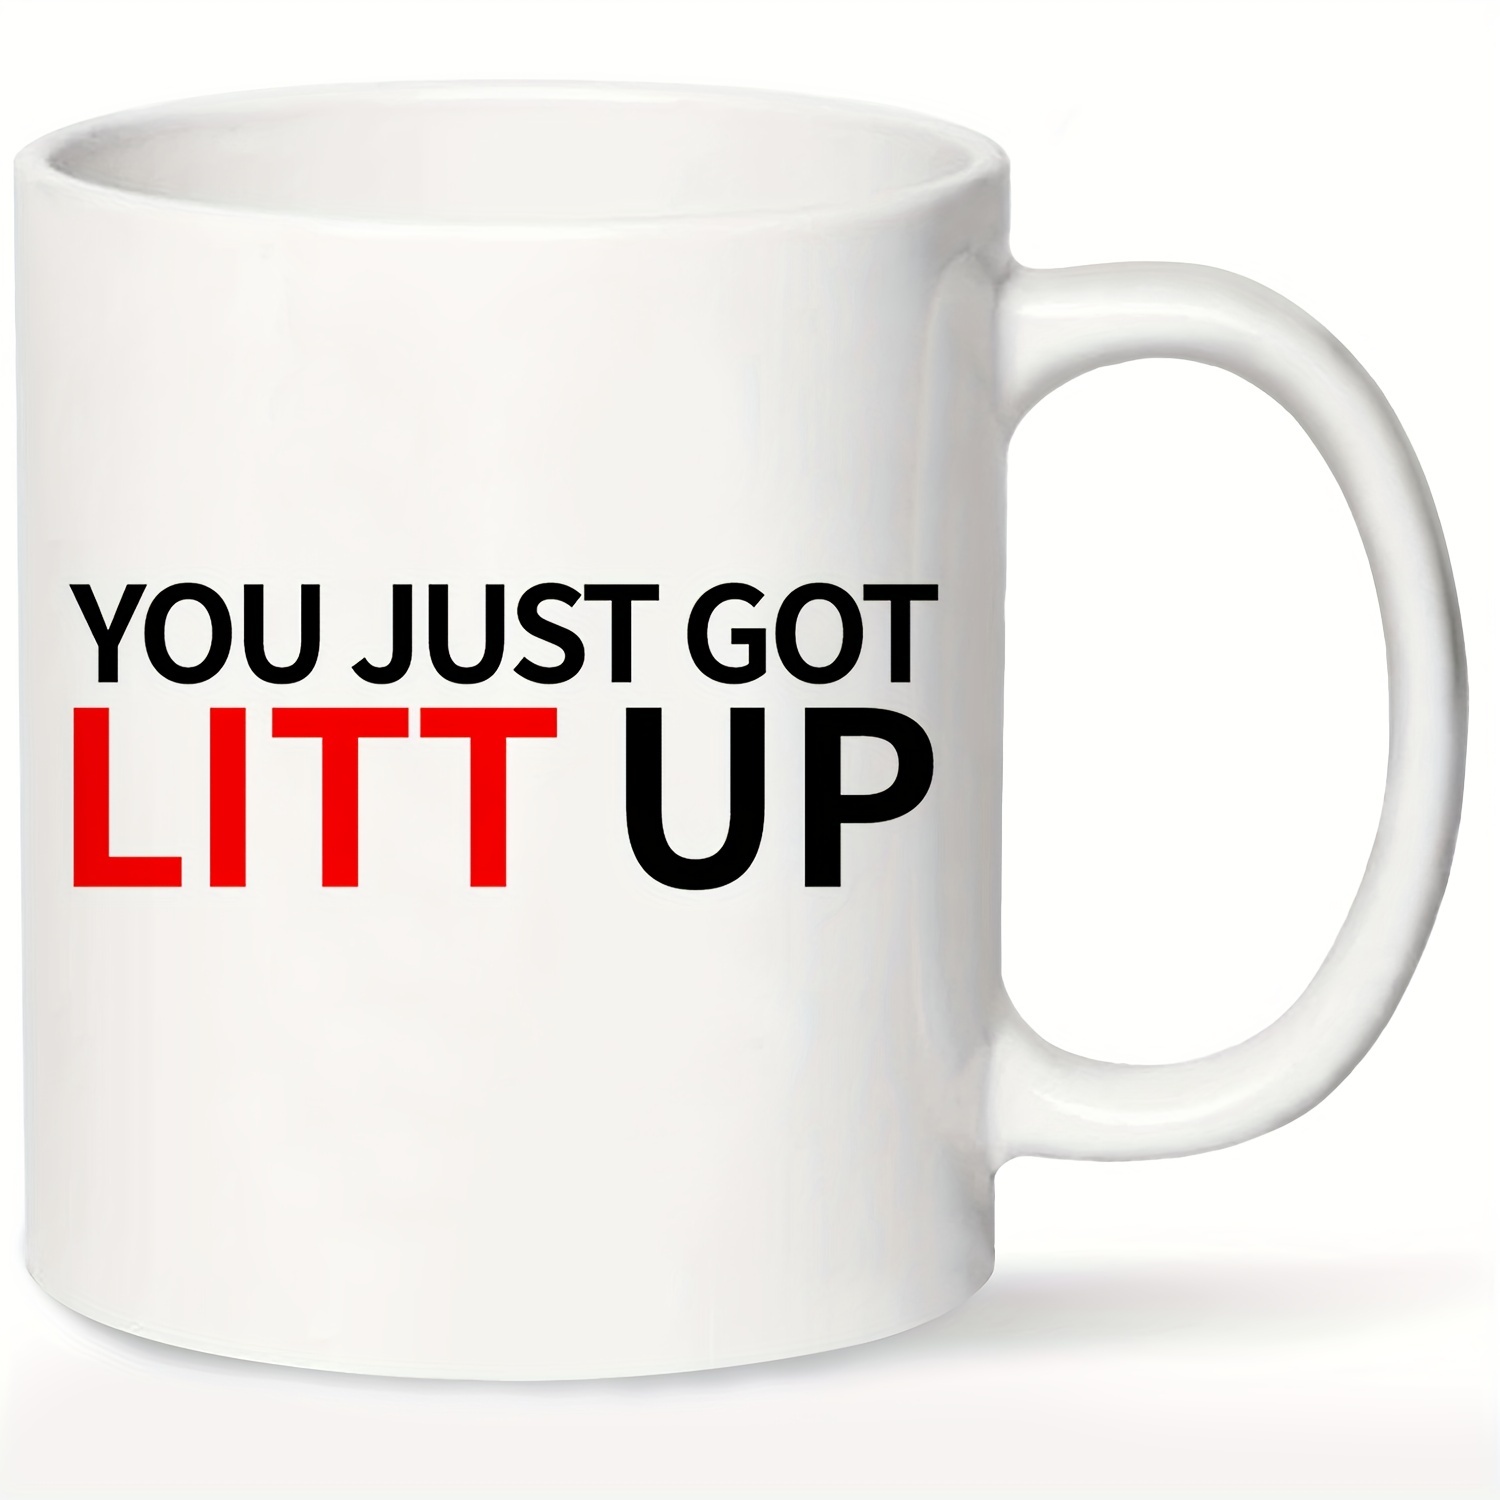 Got my You Just Got Litt Up mug. : r/suits